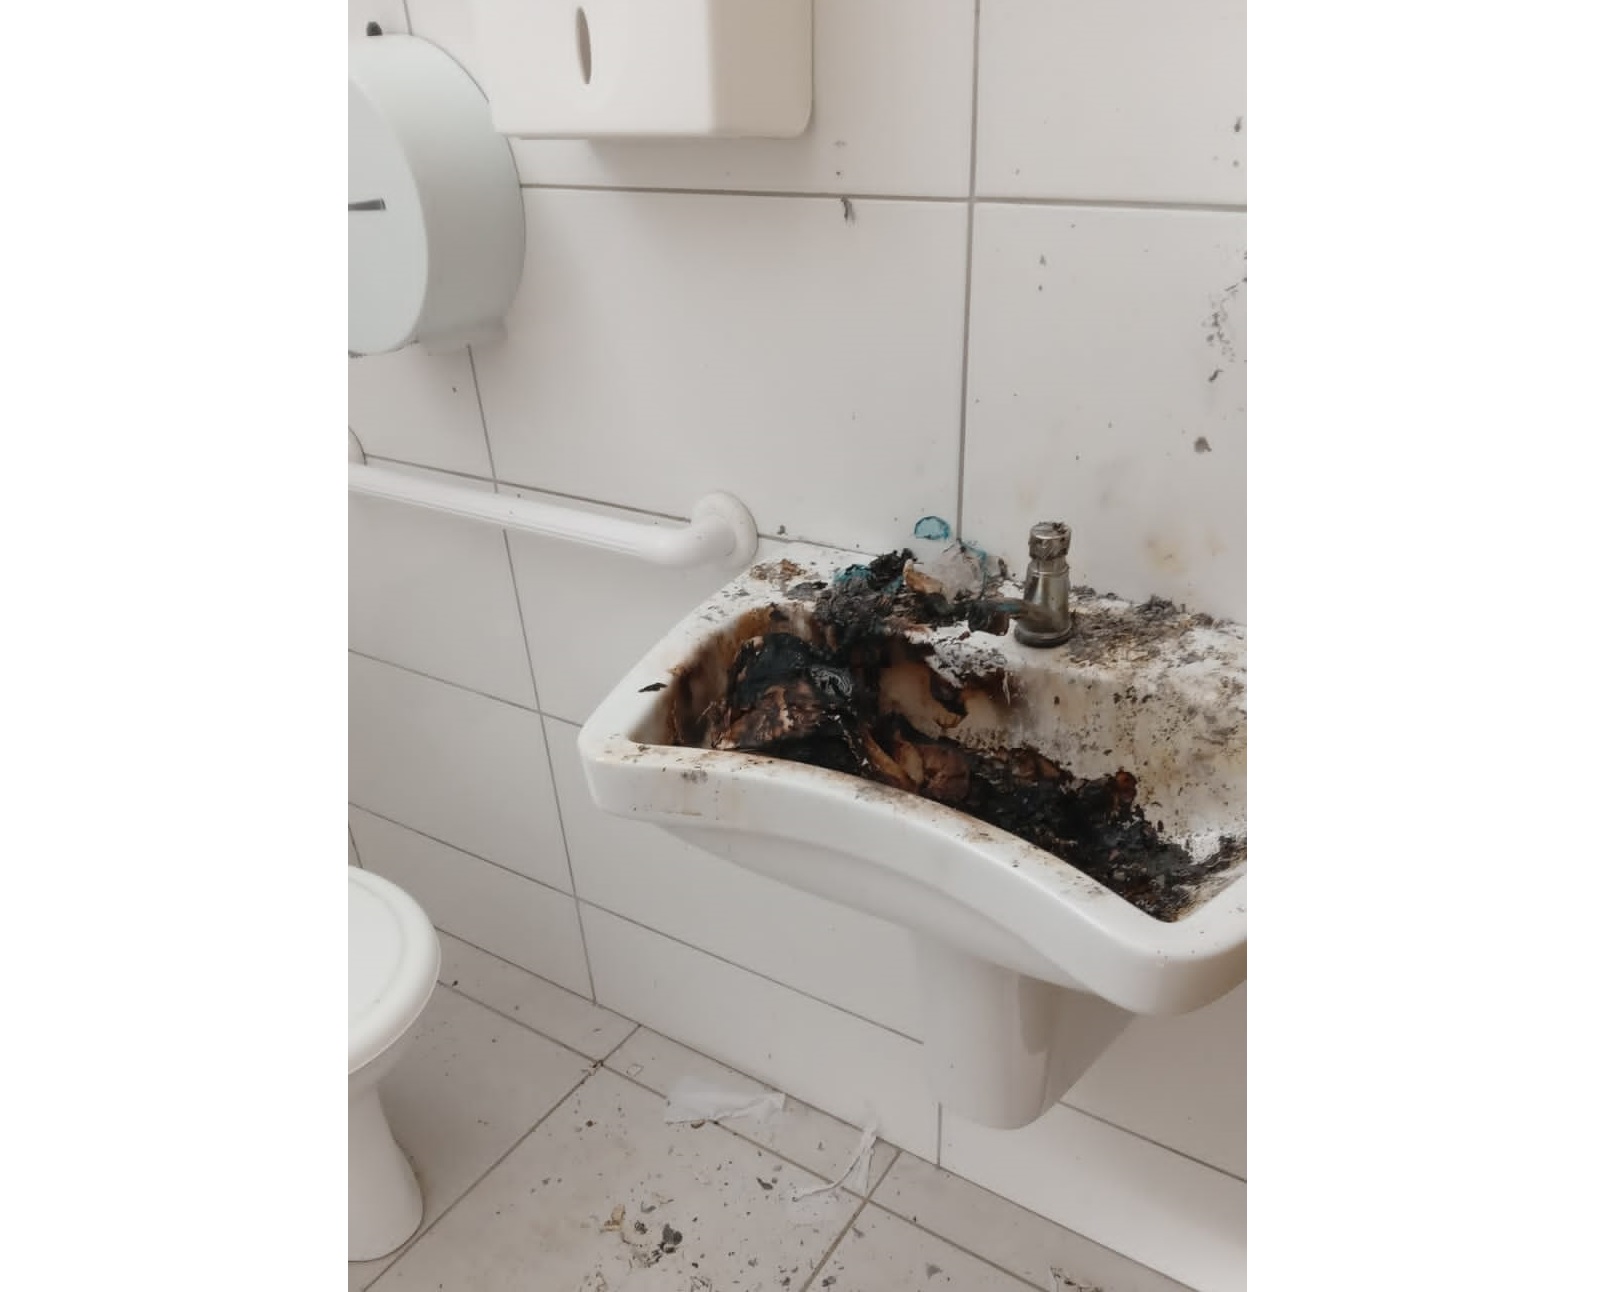 REPORTAGEM: Banheiro público da Praça no centro de Taió  é alvo de vandalismo